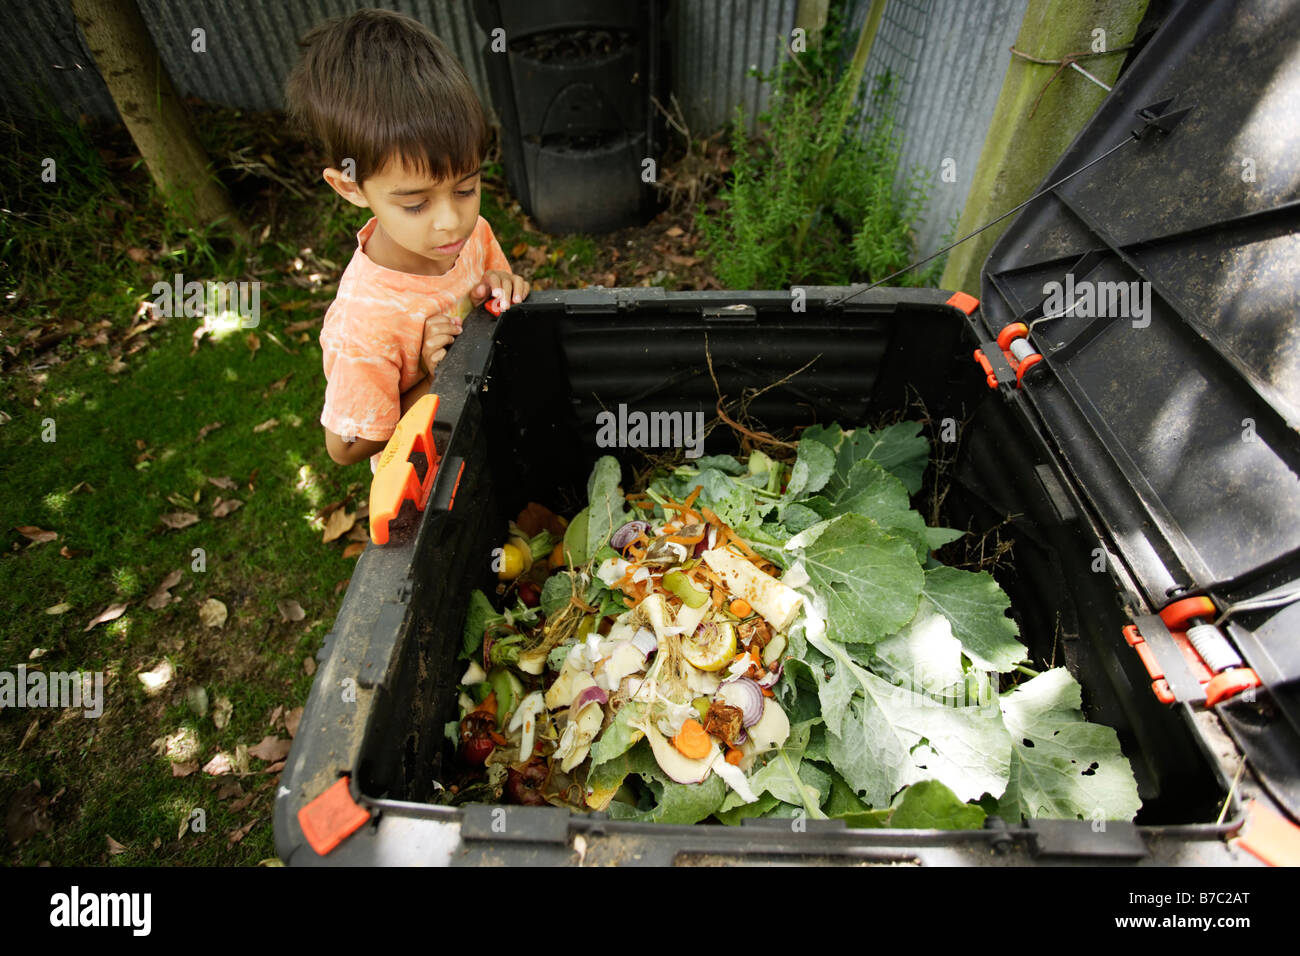 Six ans ressemble en compost bin in garden Banque D'Images